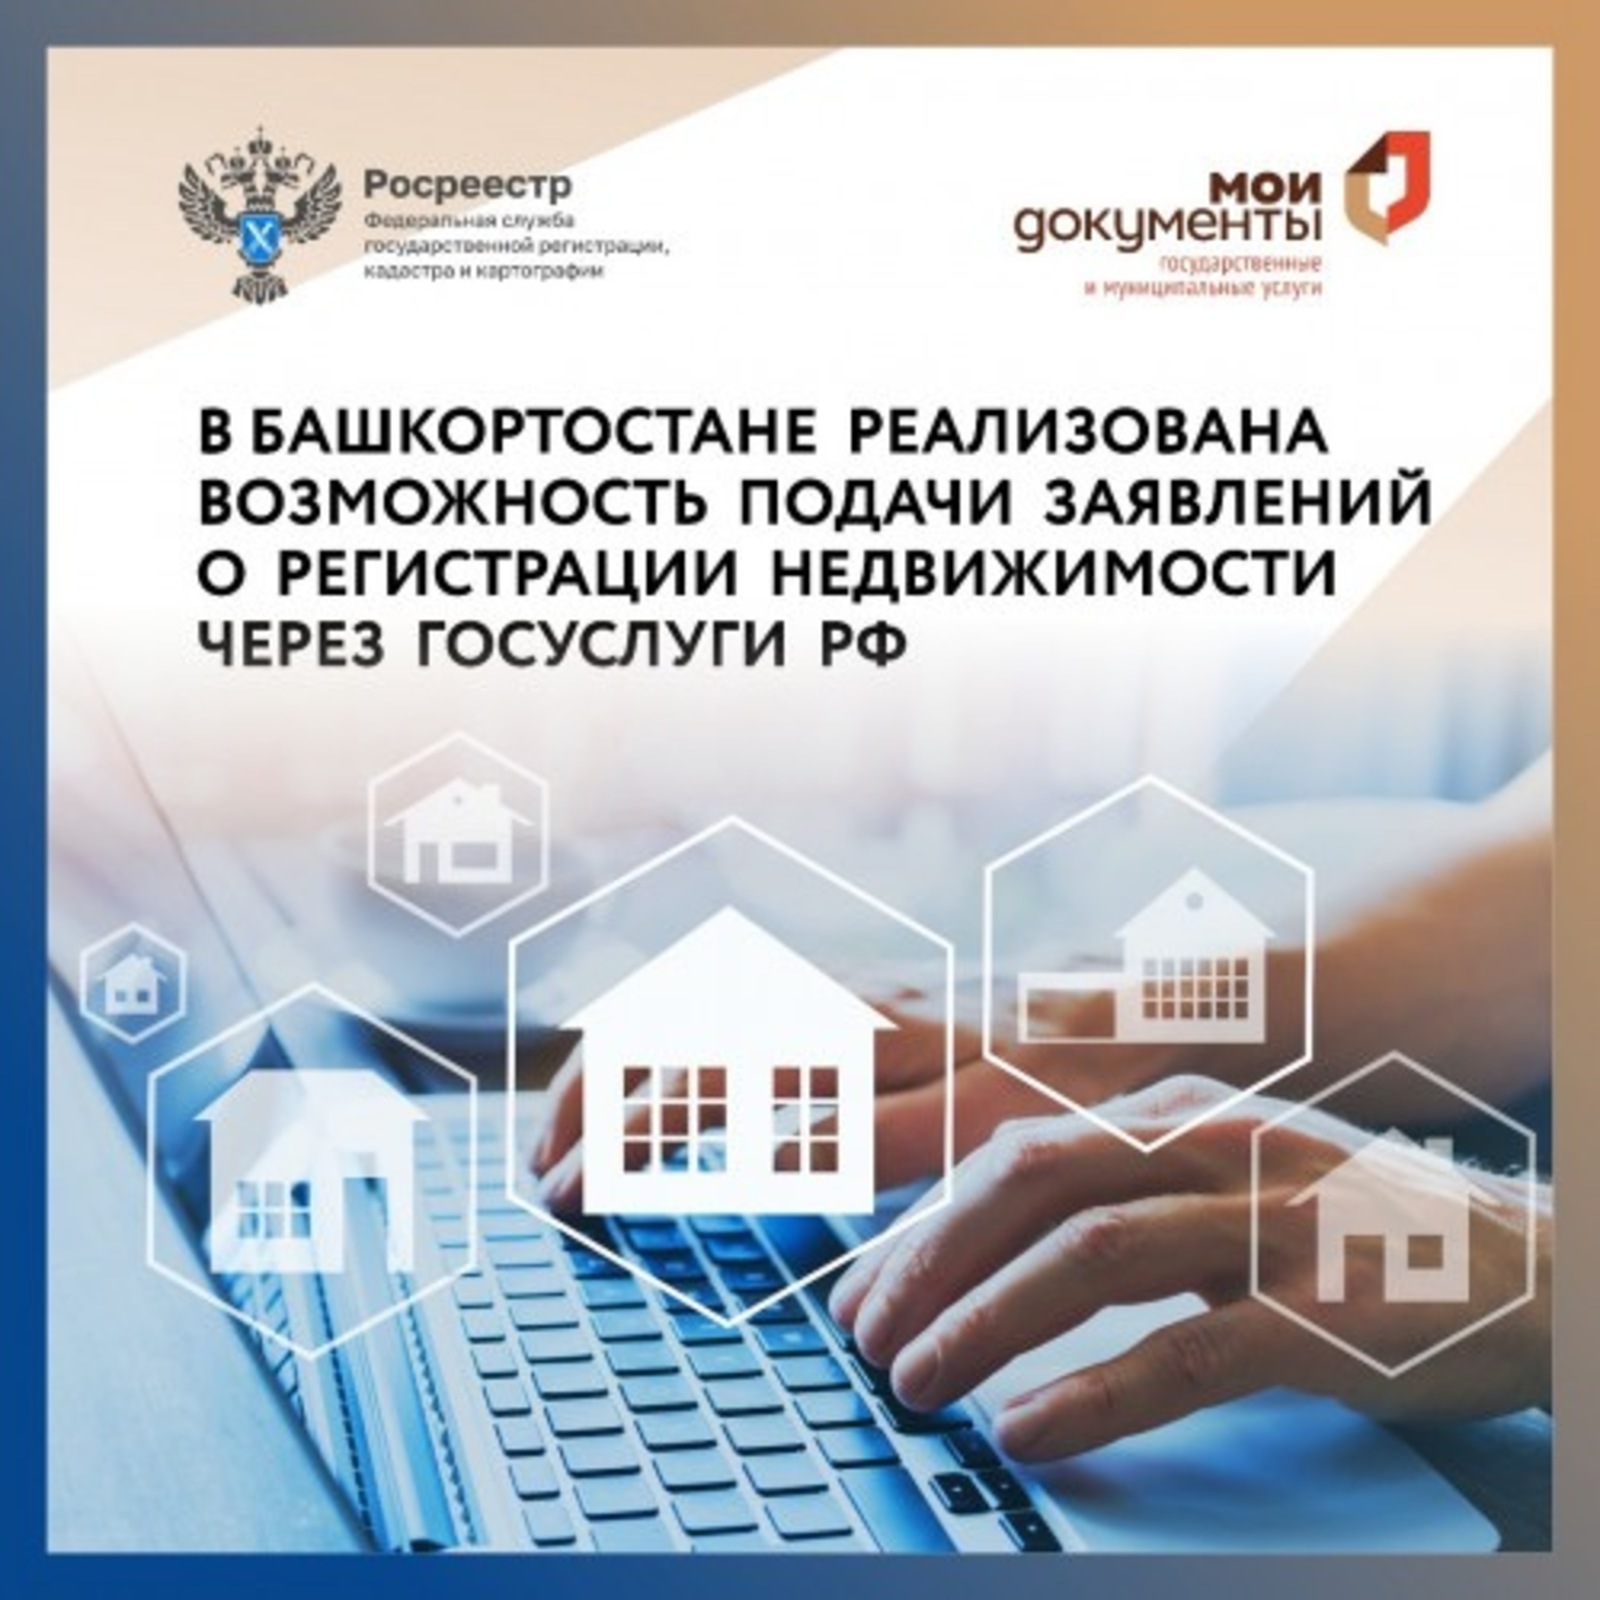 В Башкортостане реализована возможность подачи заявлений о регистрации недвижимости через Госуслуги РФ